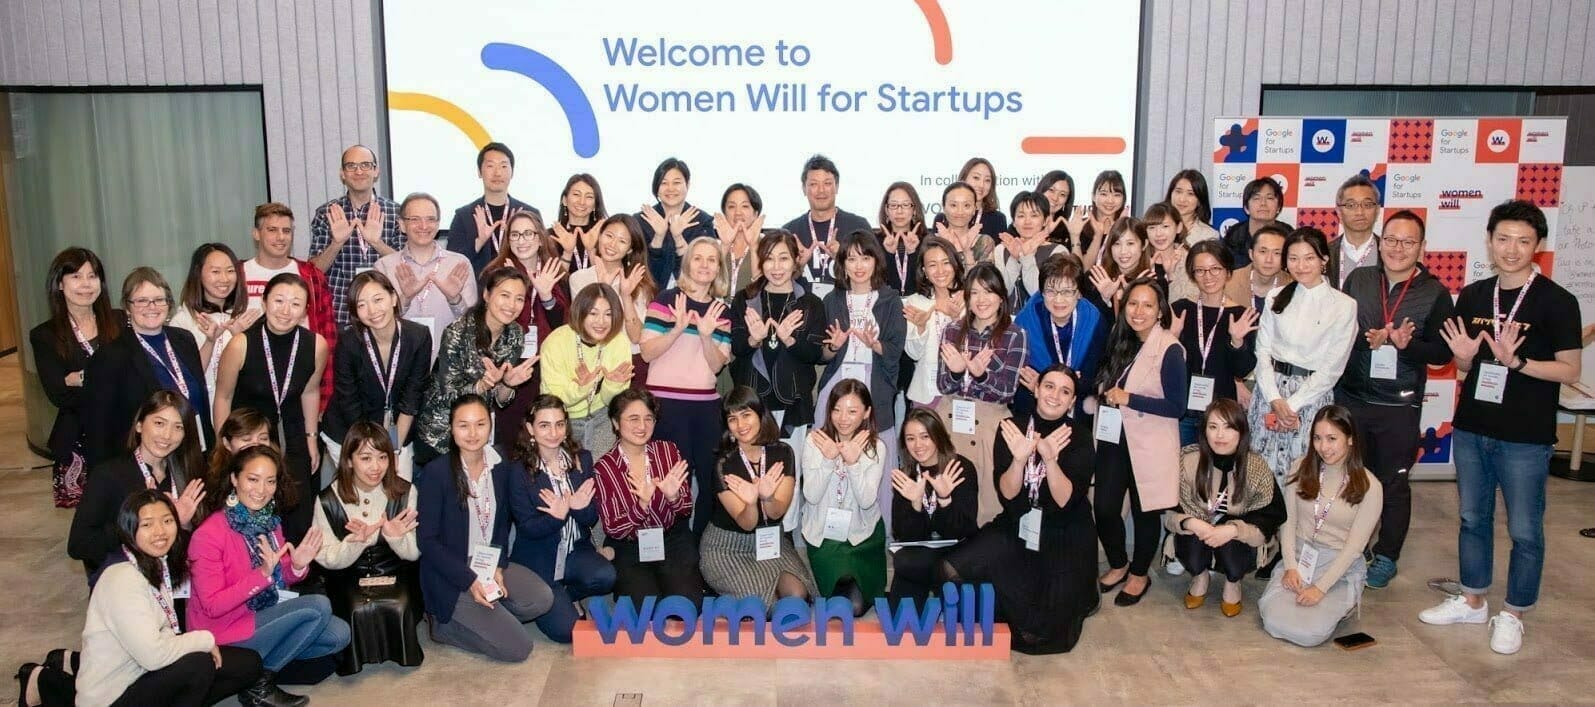 Women’s Entrepreneurship Day Event 2020 by Google